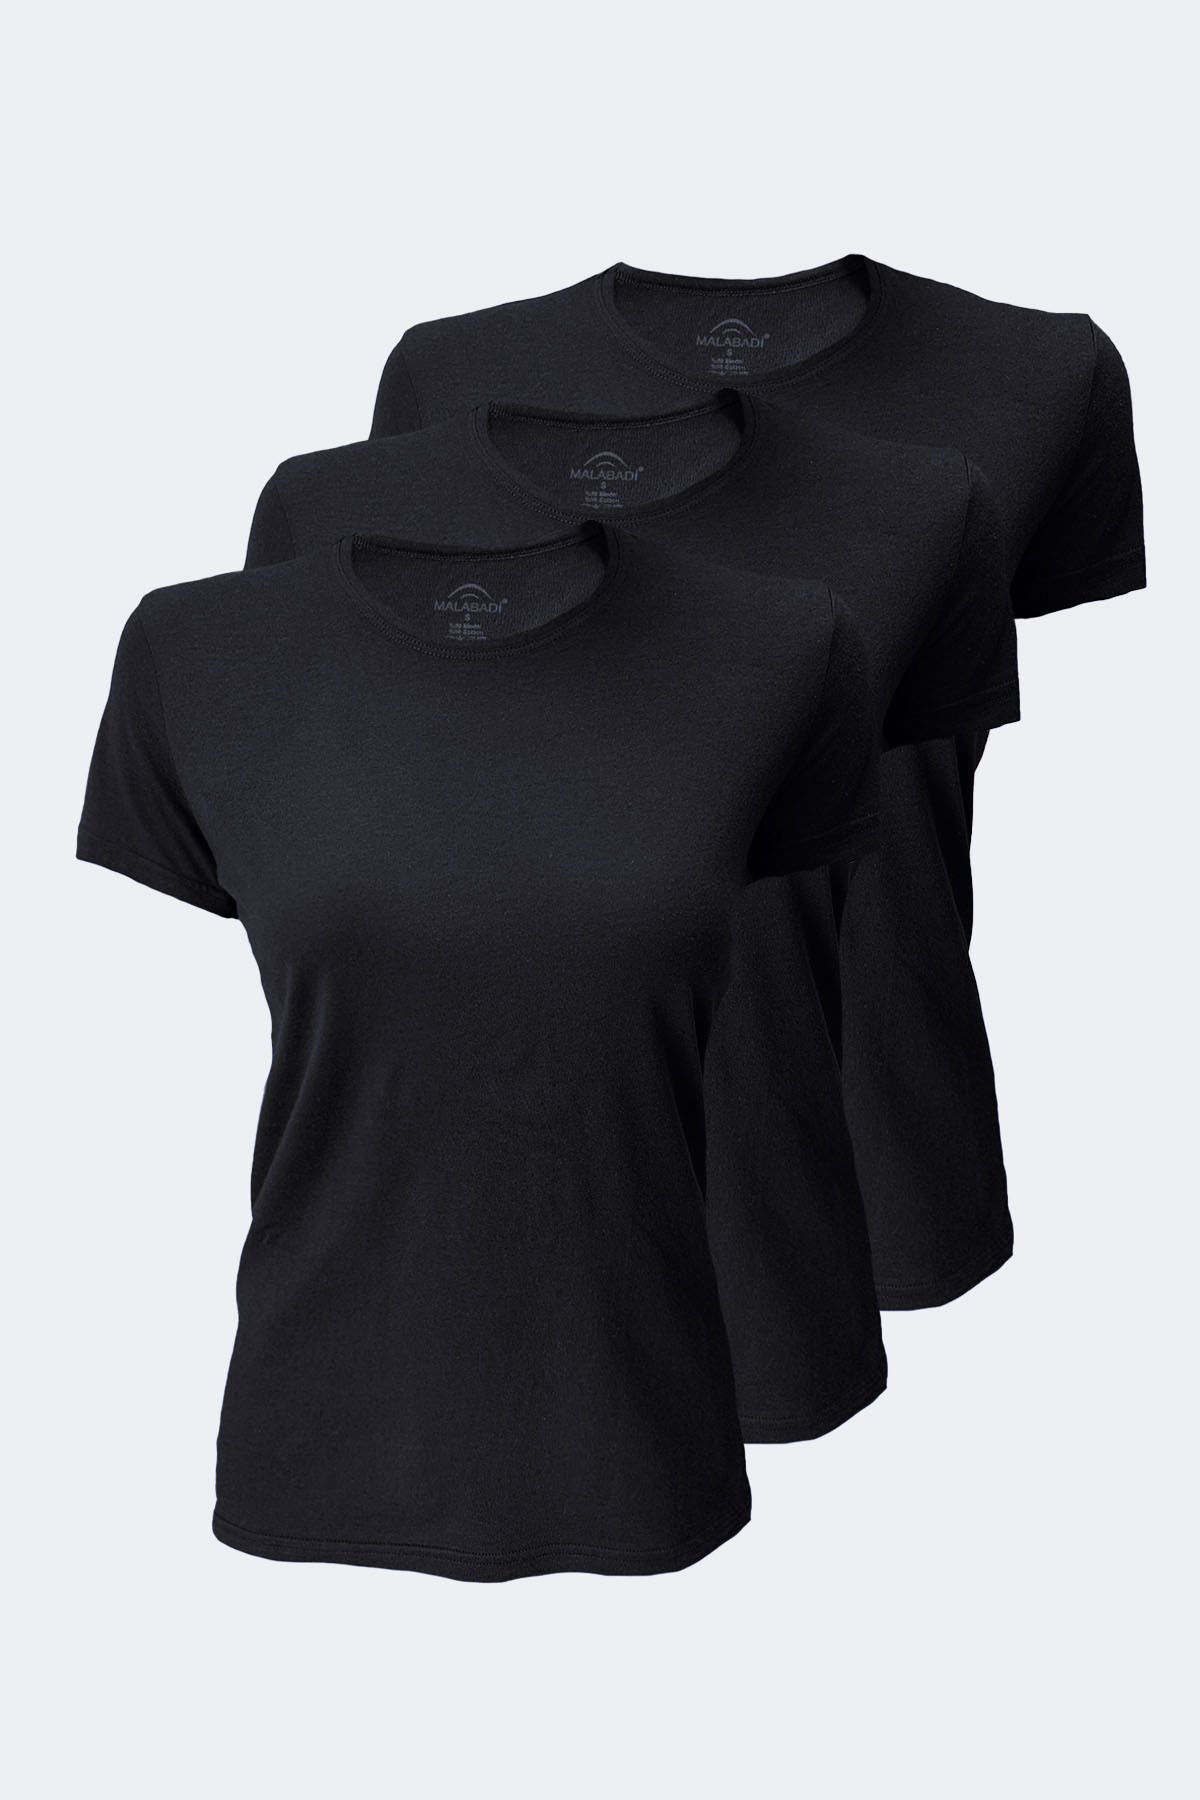 Malabadi Kadın Siyah 3 Lü Paket Basic Yuvarlak Yaka Ince Modal T-shirt 3m7050